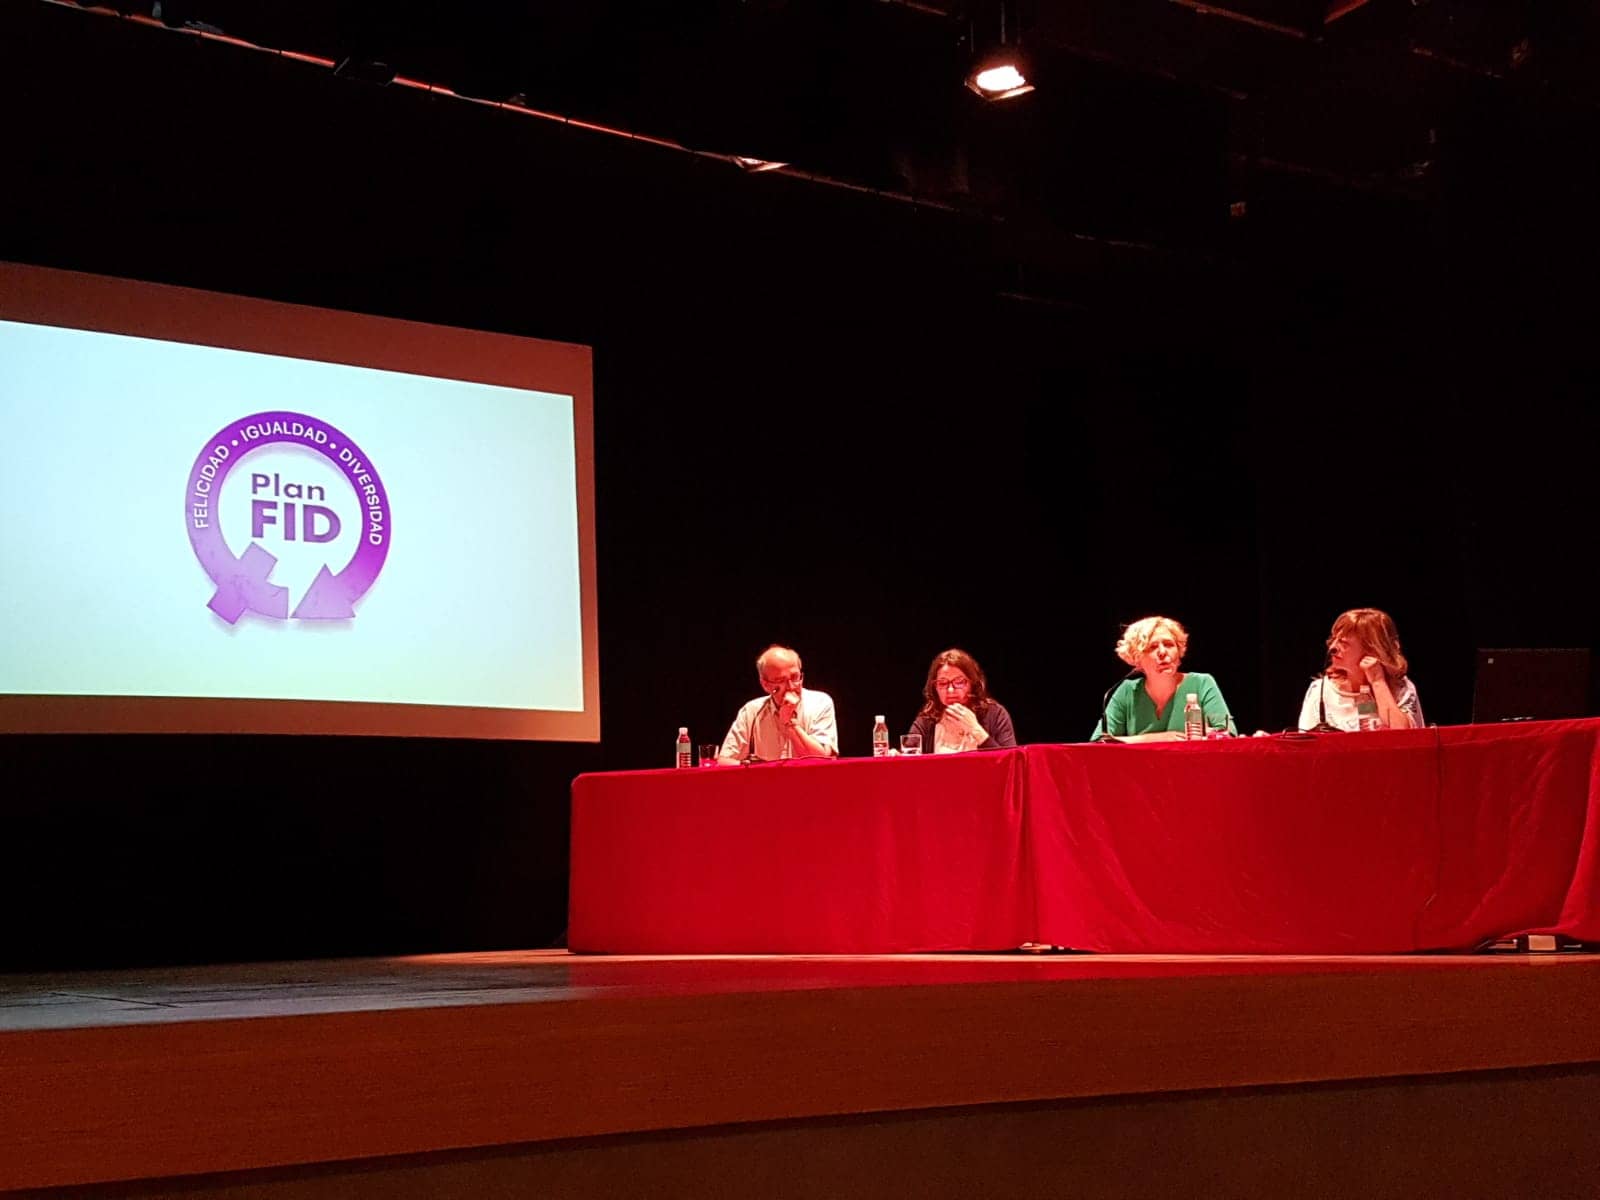 Crean  el sello FID (Felicidad, Igualdad y Diversidad) para actividades culturales en Villena